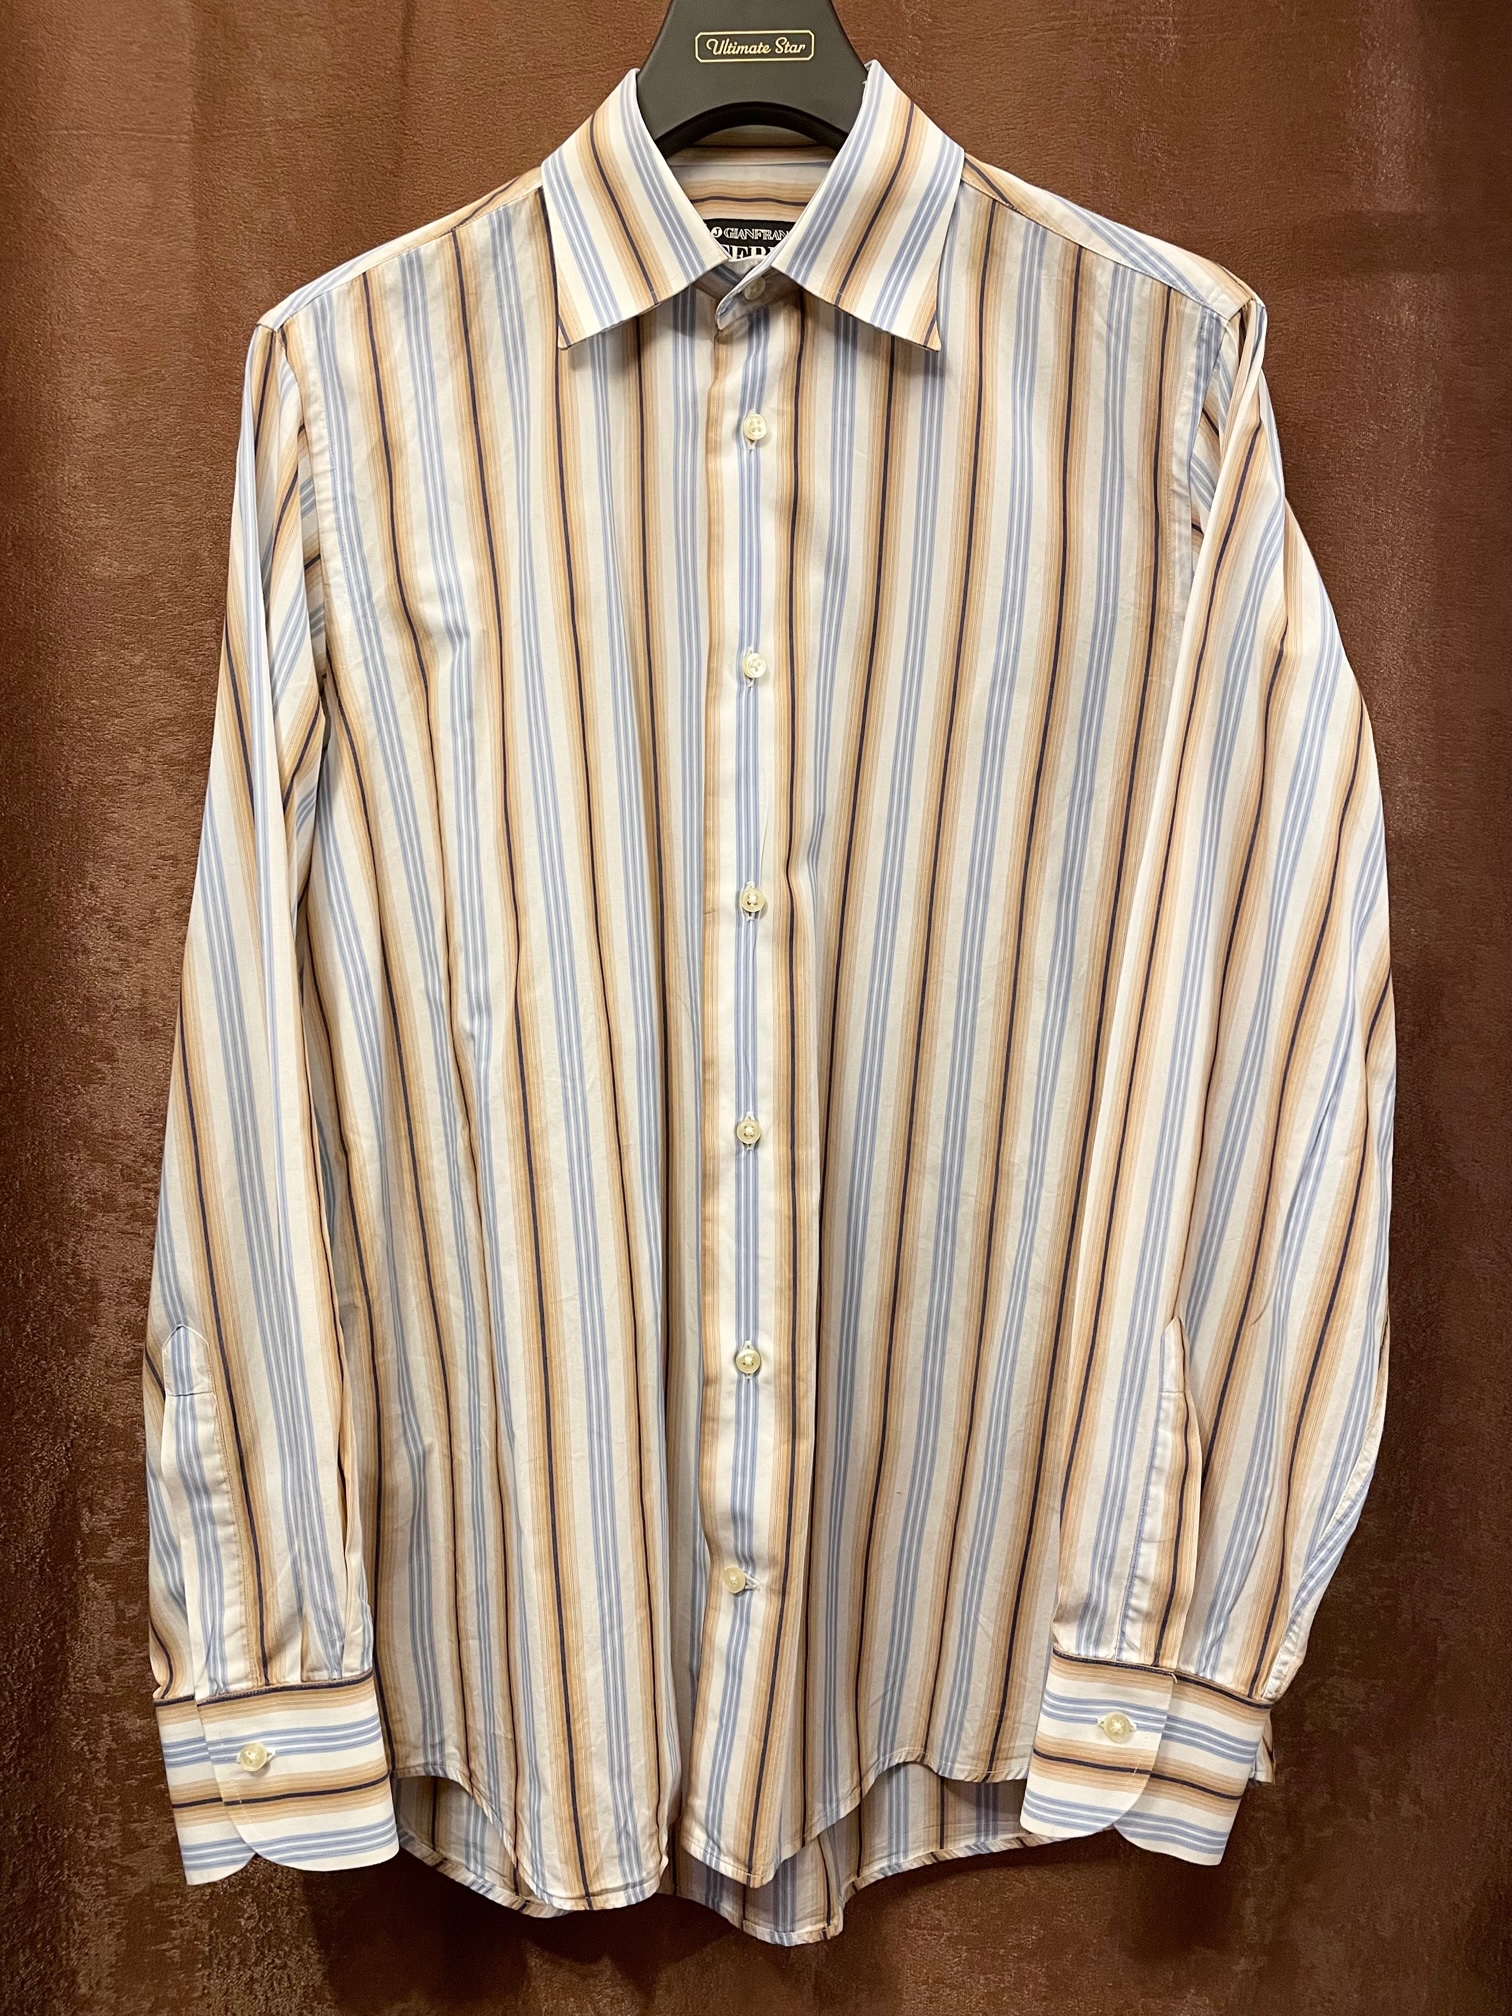 5,852円ferre vintage open collar shirts pattern